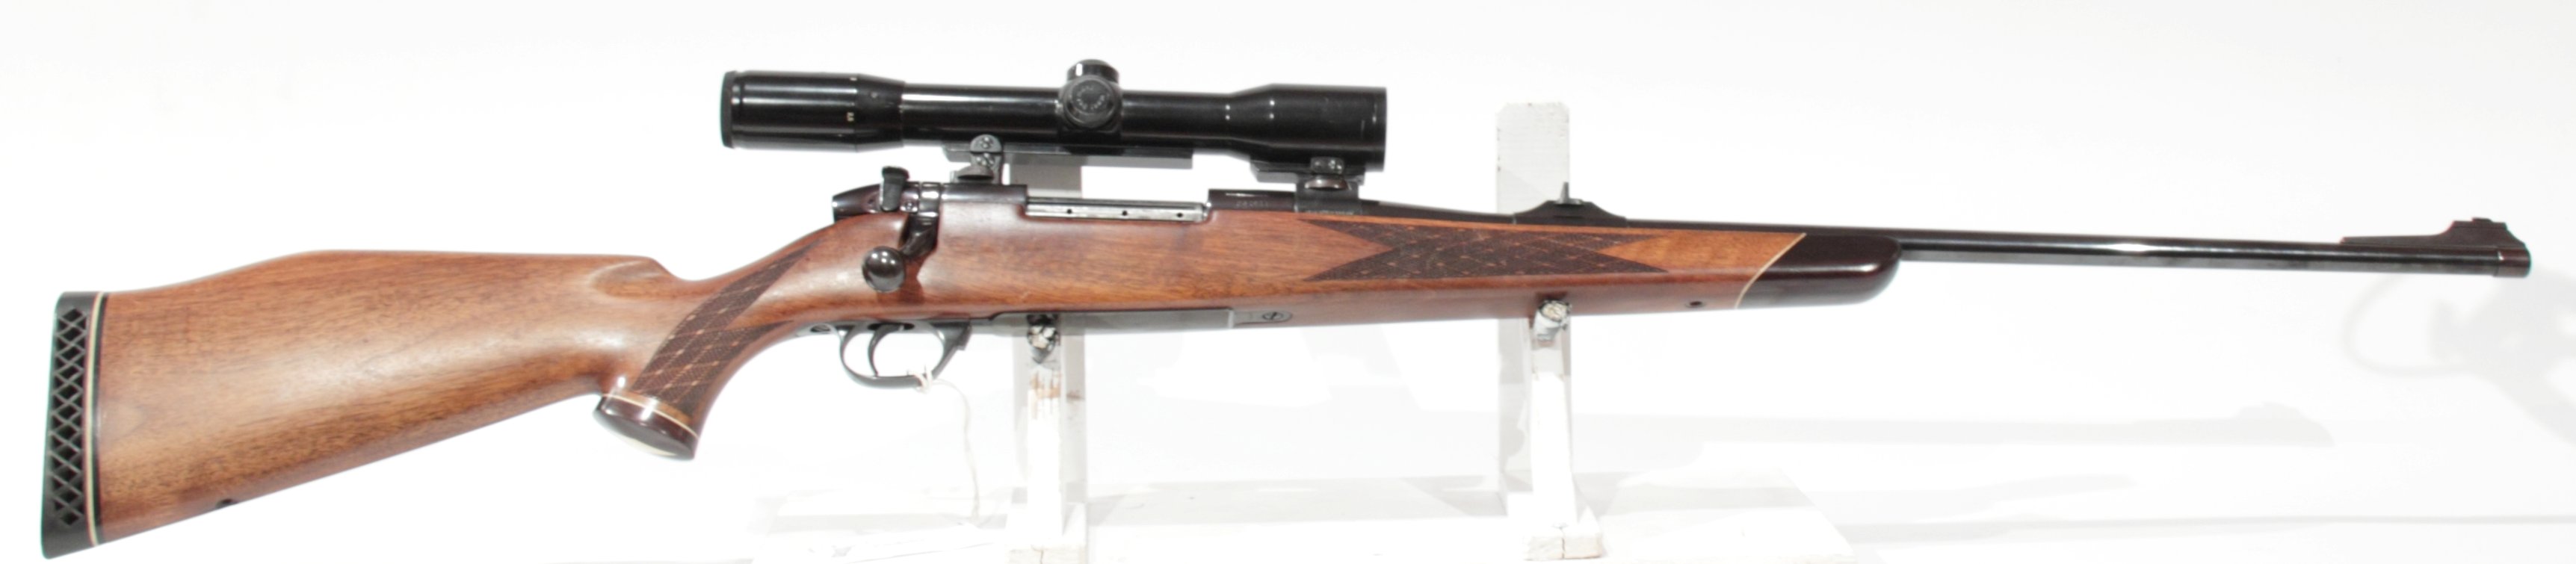 CARABINA AD OTTURATORE - MARCA WEATHERBY SAUER - MODELLO MK V EUROPA - CALIBRO 270 Weatherby Magnum 37